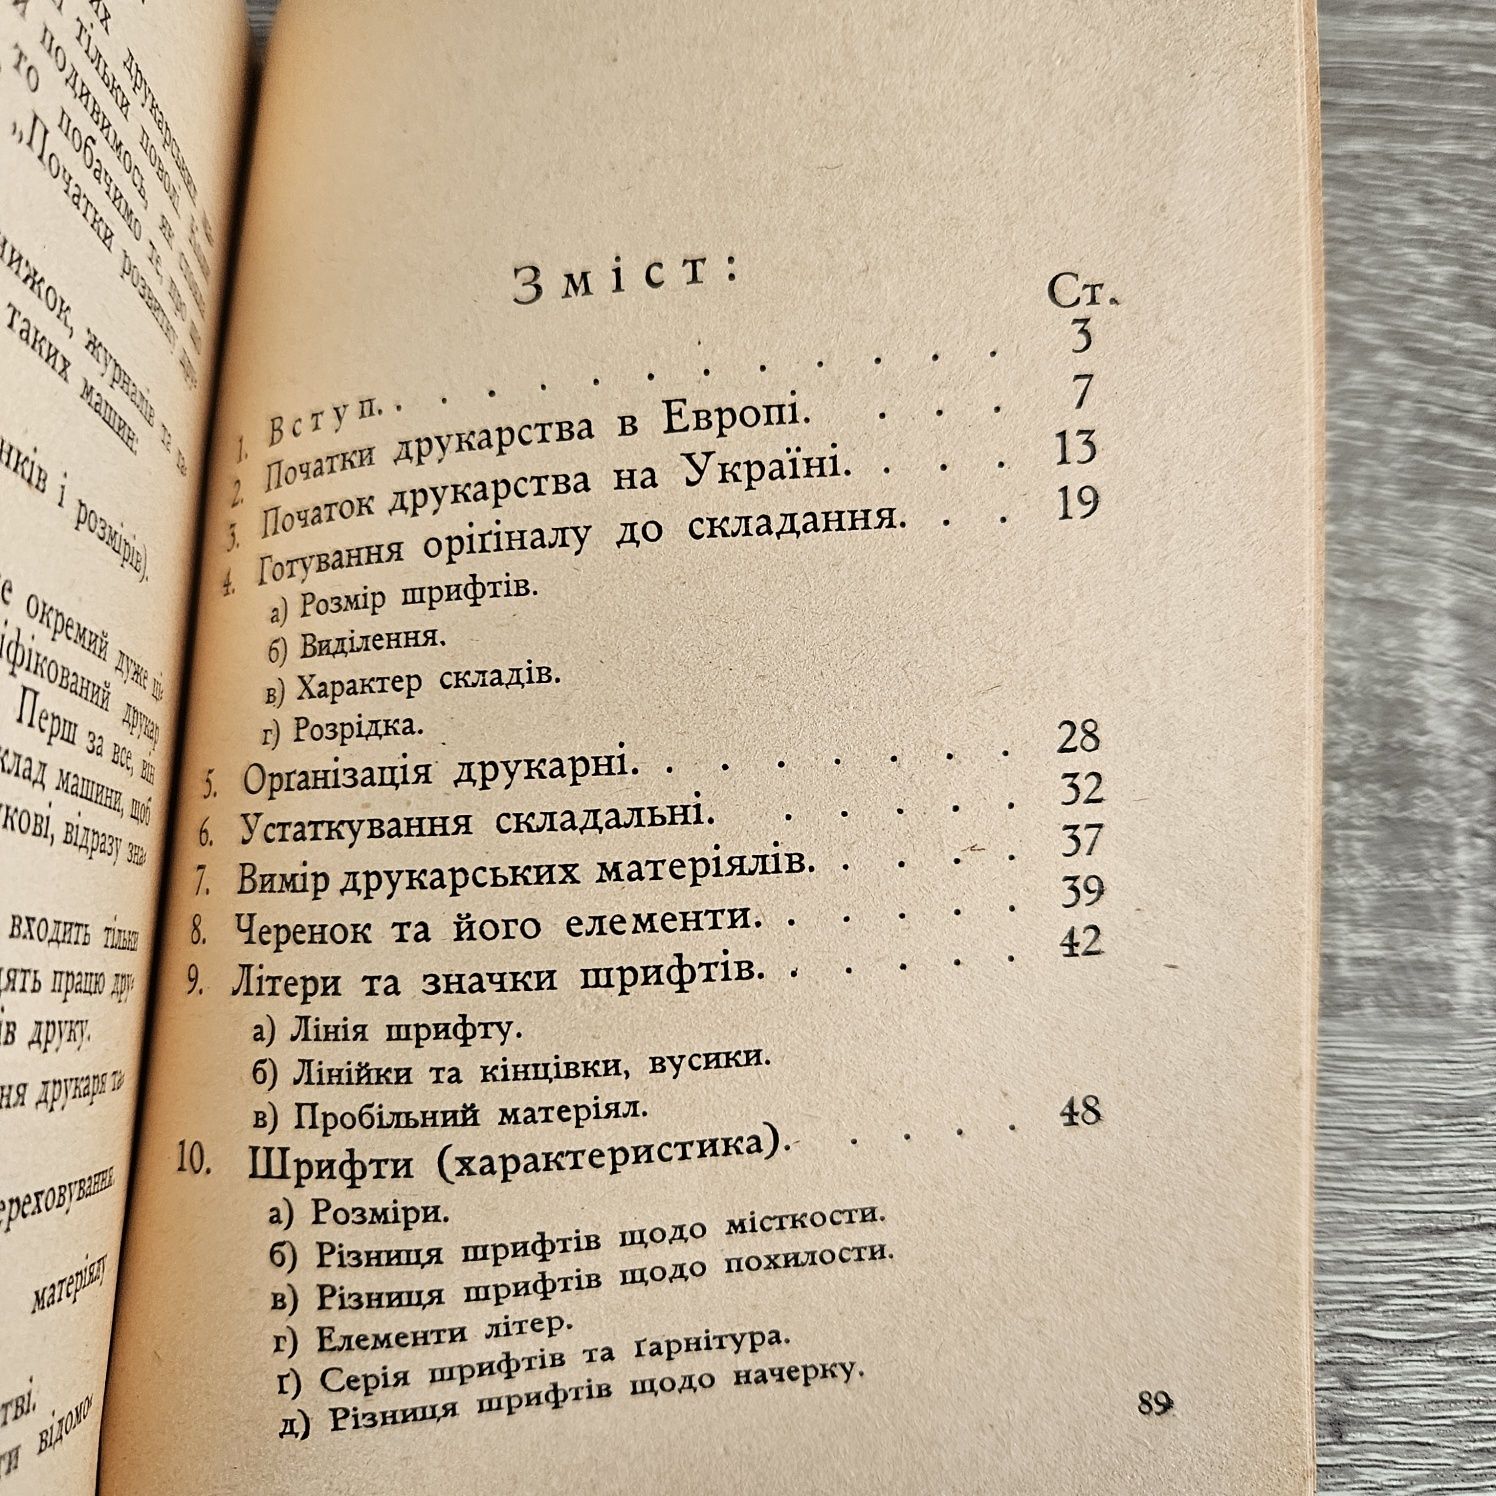 "Друкарство порадник для робітників пера і друку" Ю.Тищенка, 1948р.